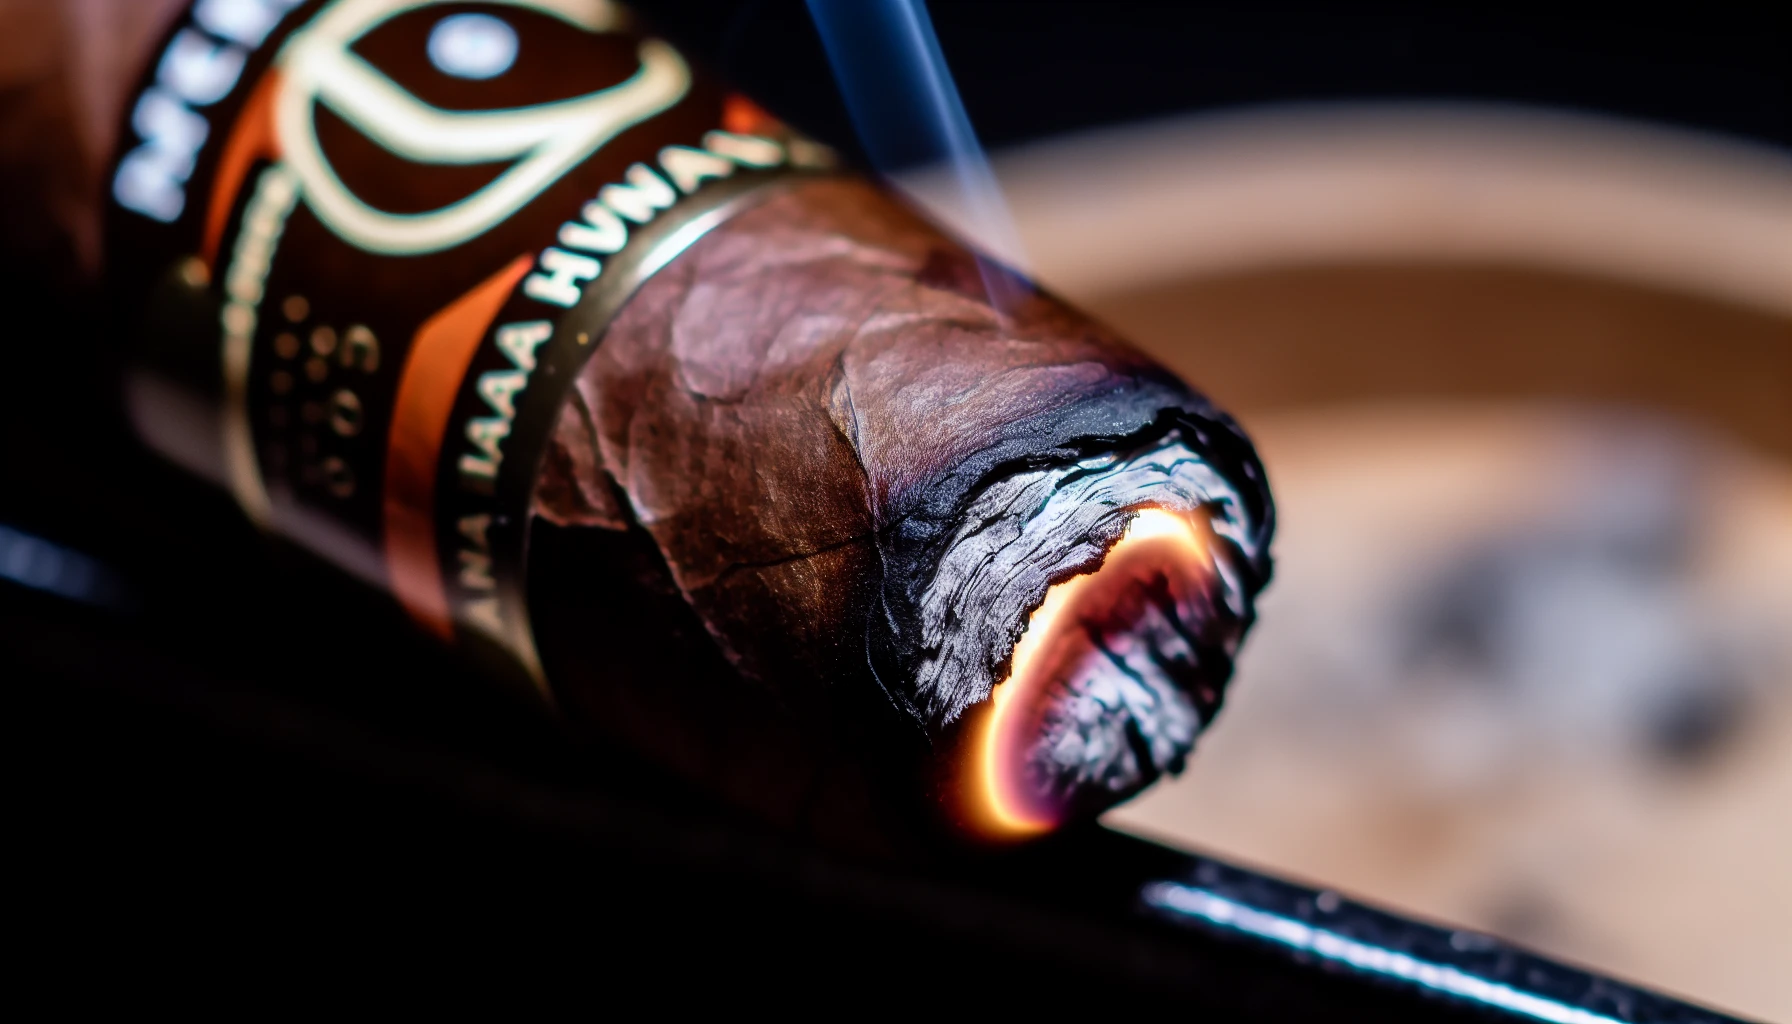 A close-up of a lit Tatuaje Havana VI Verocu cigar, showcasing the burn line